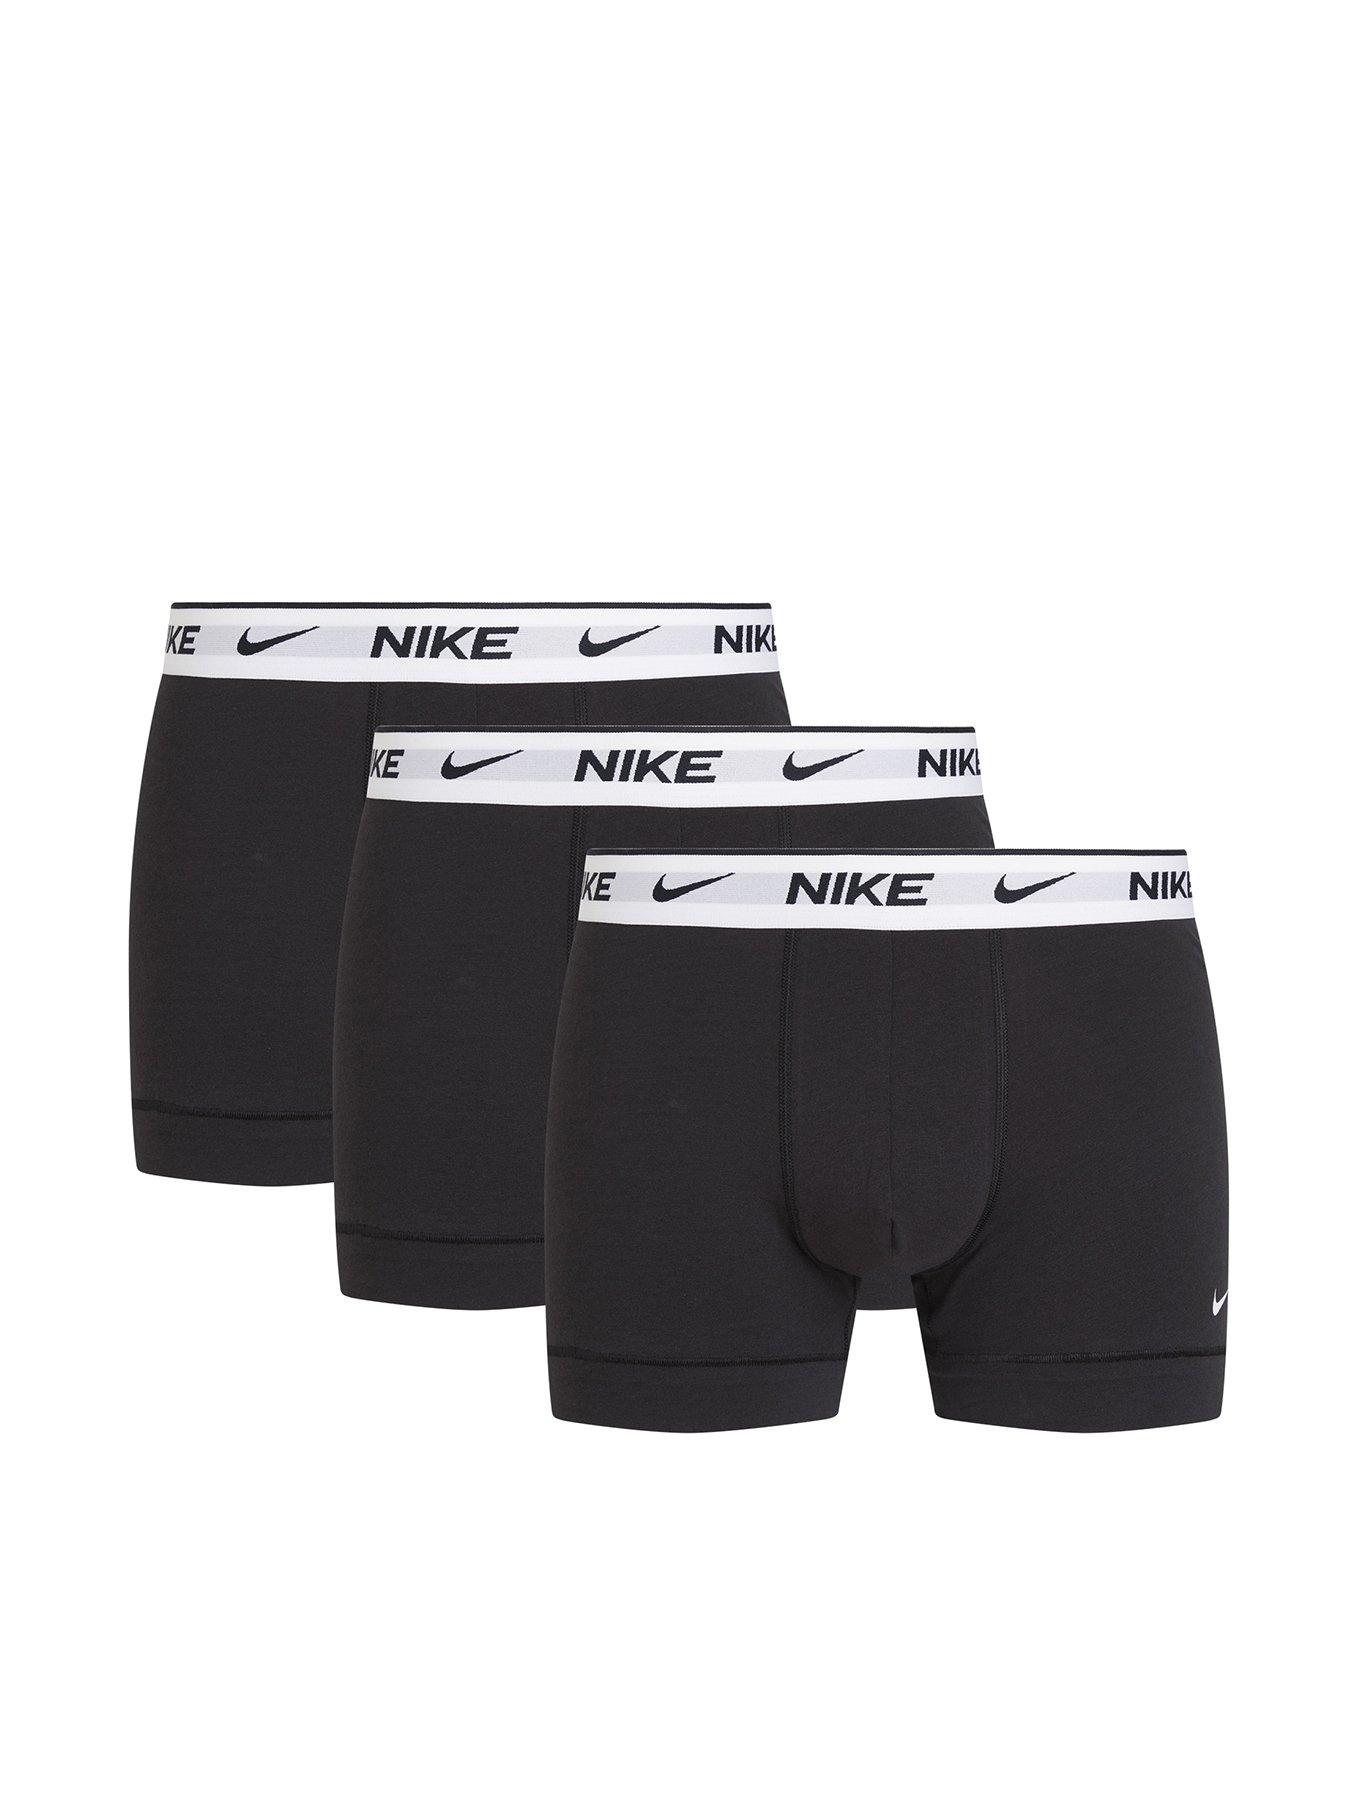 Nike Underwear Everyday Cotton Stretch Boxer Brief (3 Pack) - Black/White